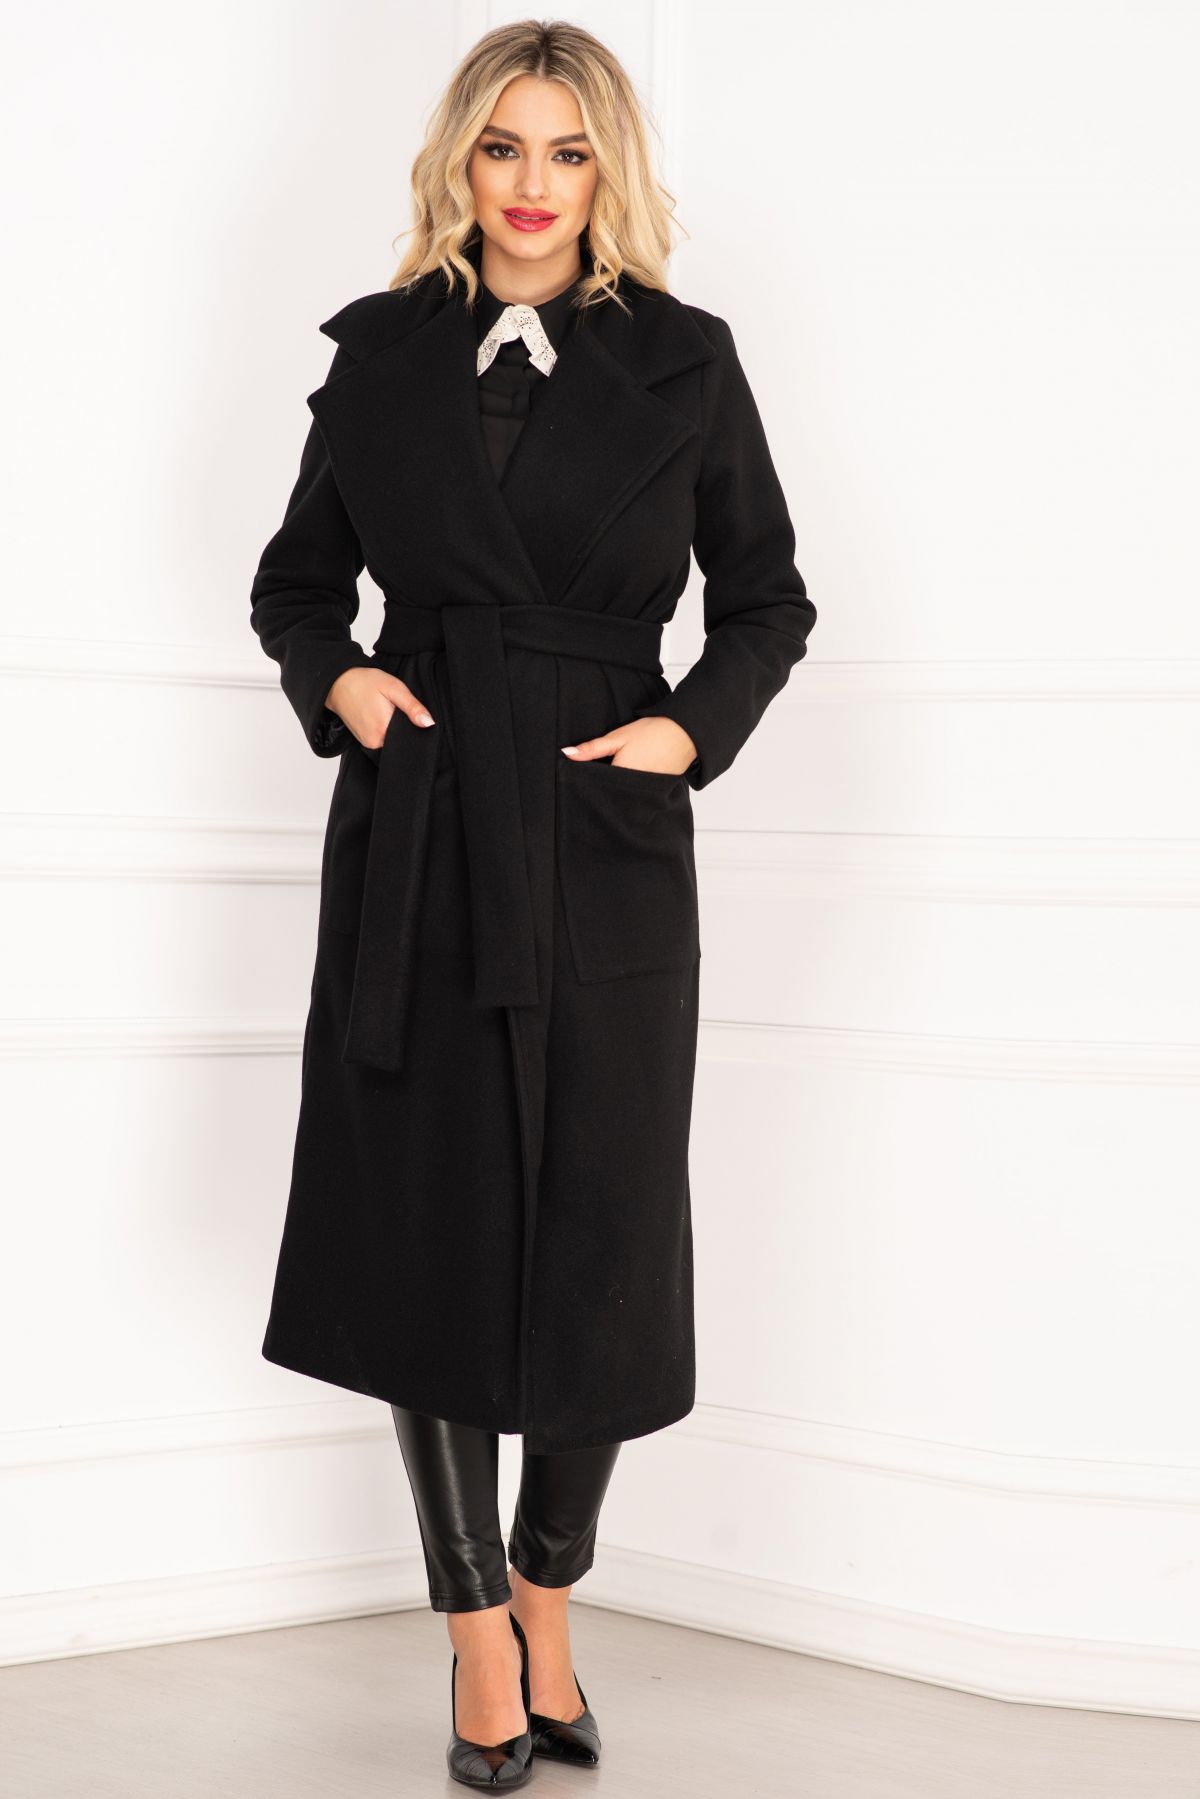 Palton dama elegant negru lung din stofa